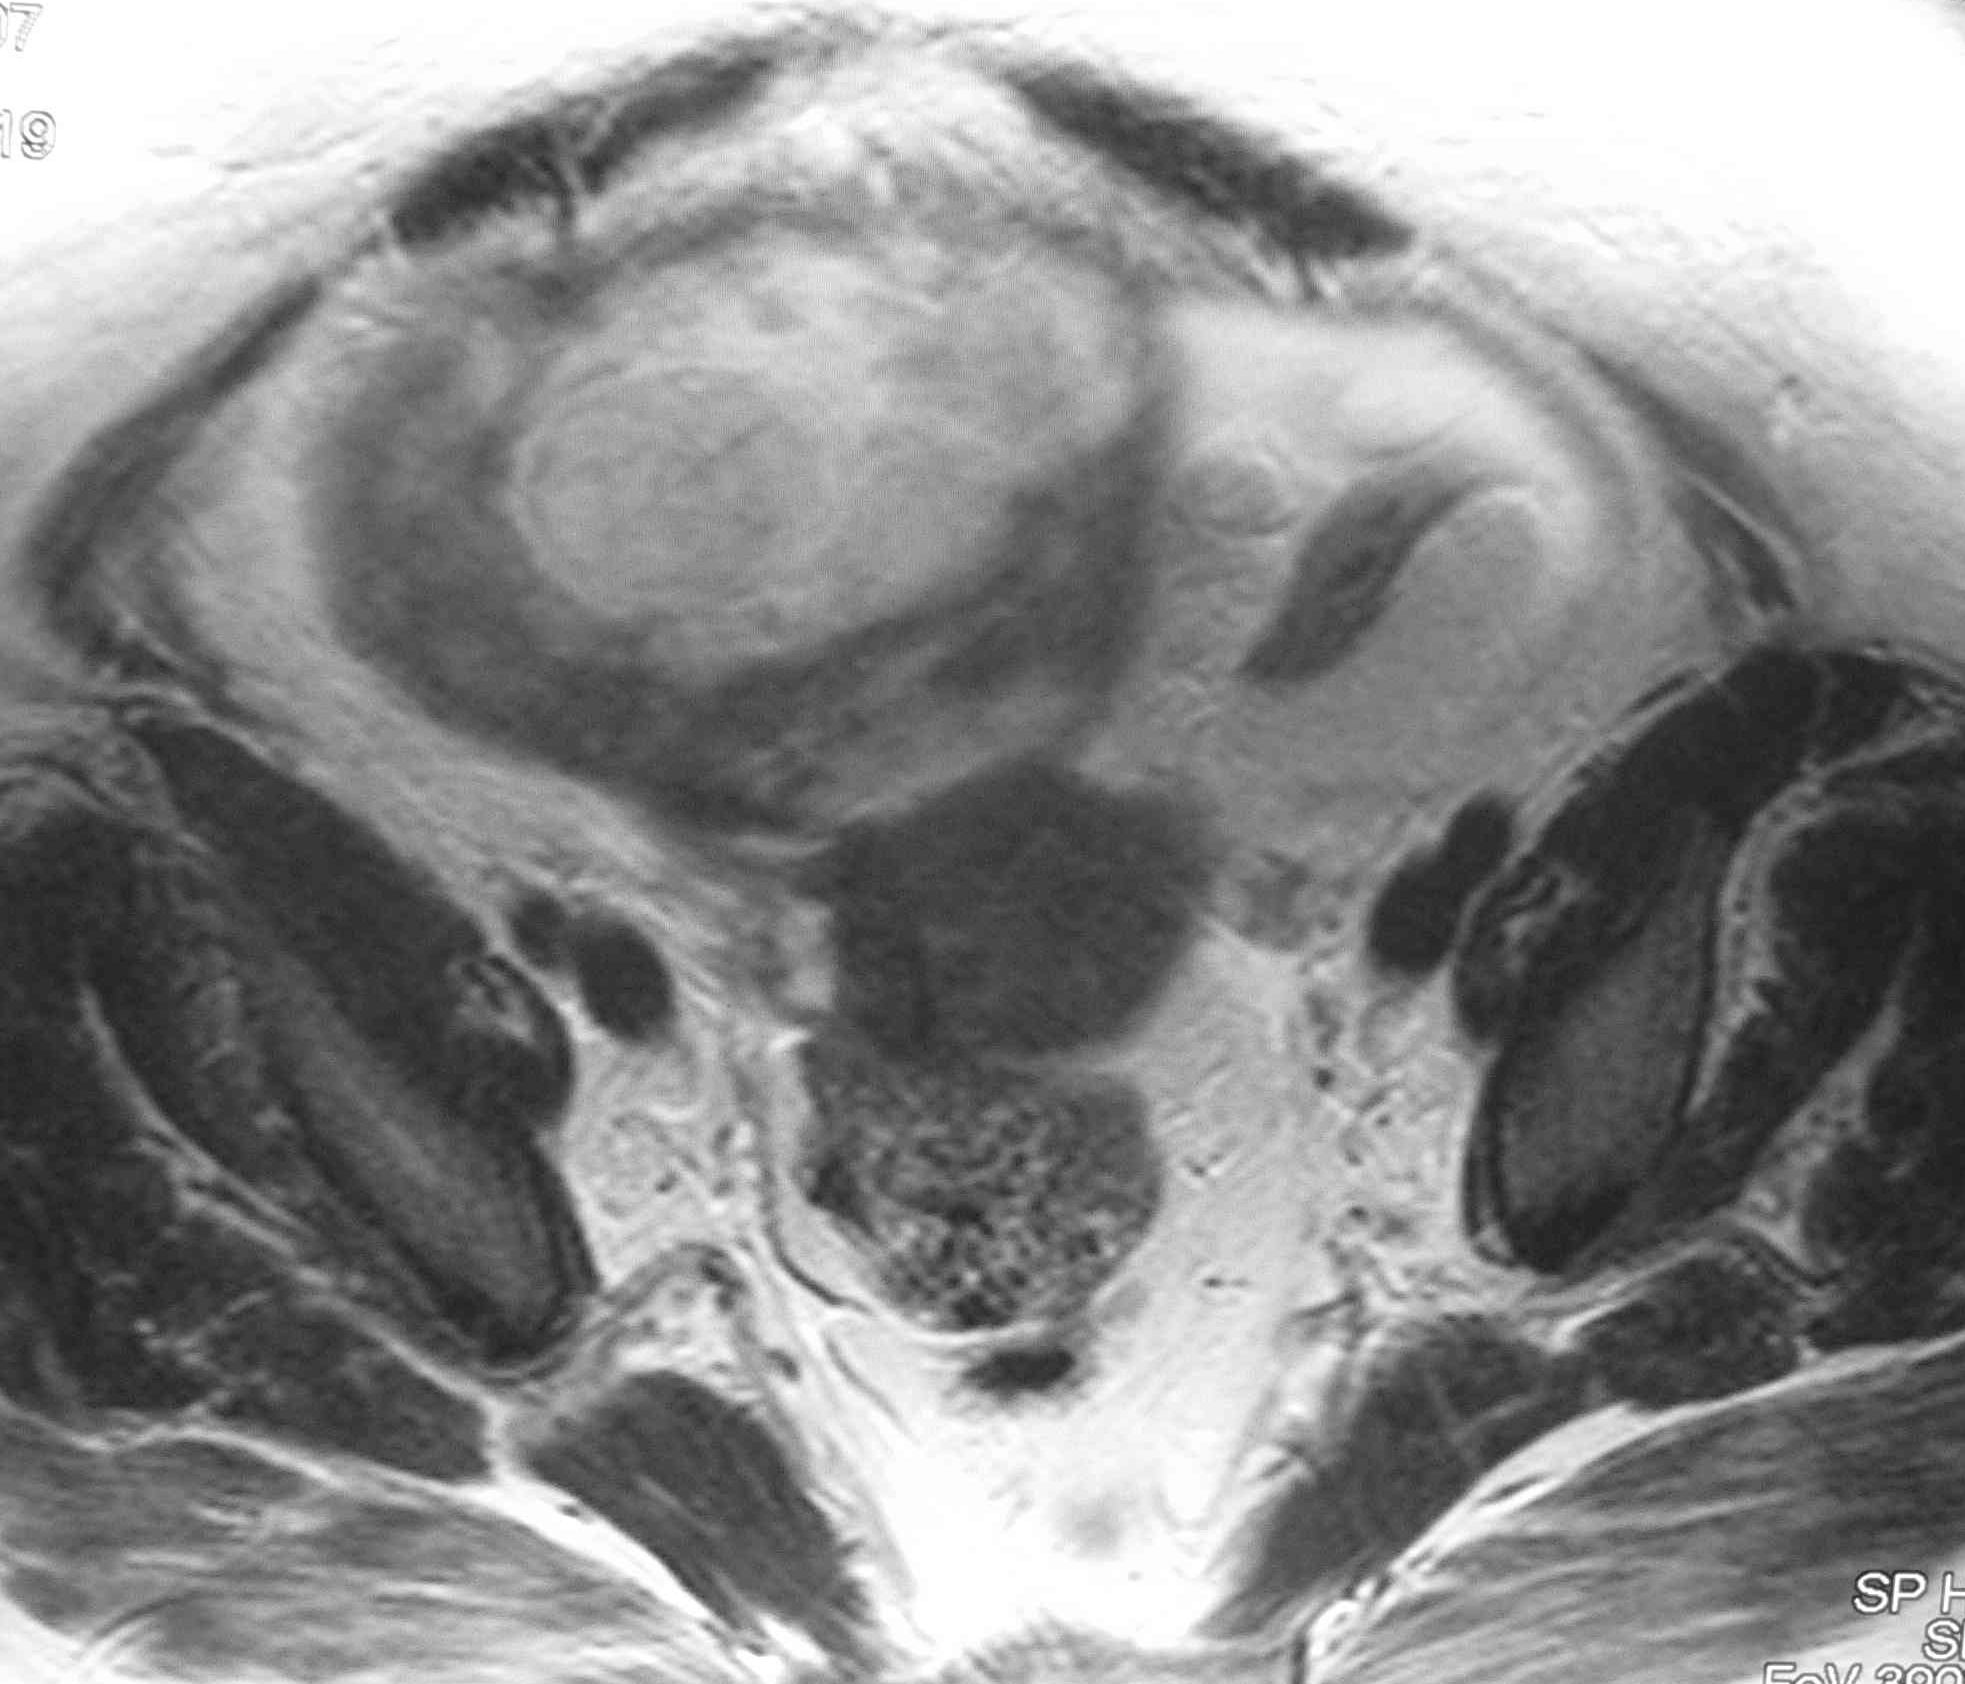 T1 com saturação de gordura Fig. 3 - RM - leiomioma com degenerescência hemorrágica em mulher de 44 anos. O sintoma é o aparecimento de dor gradual ou aguda.